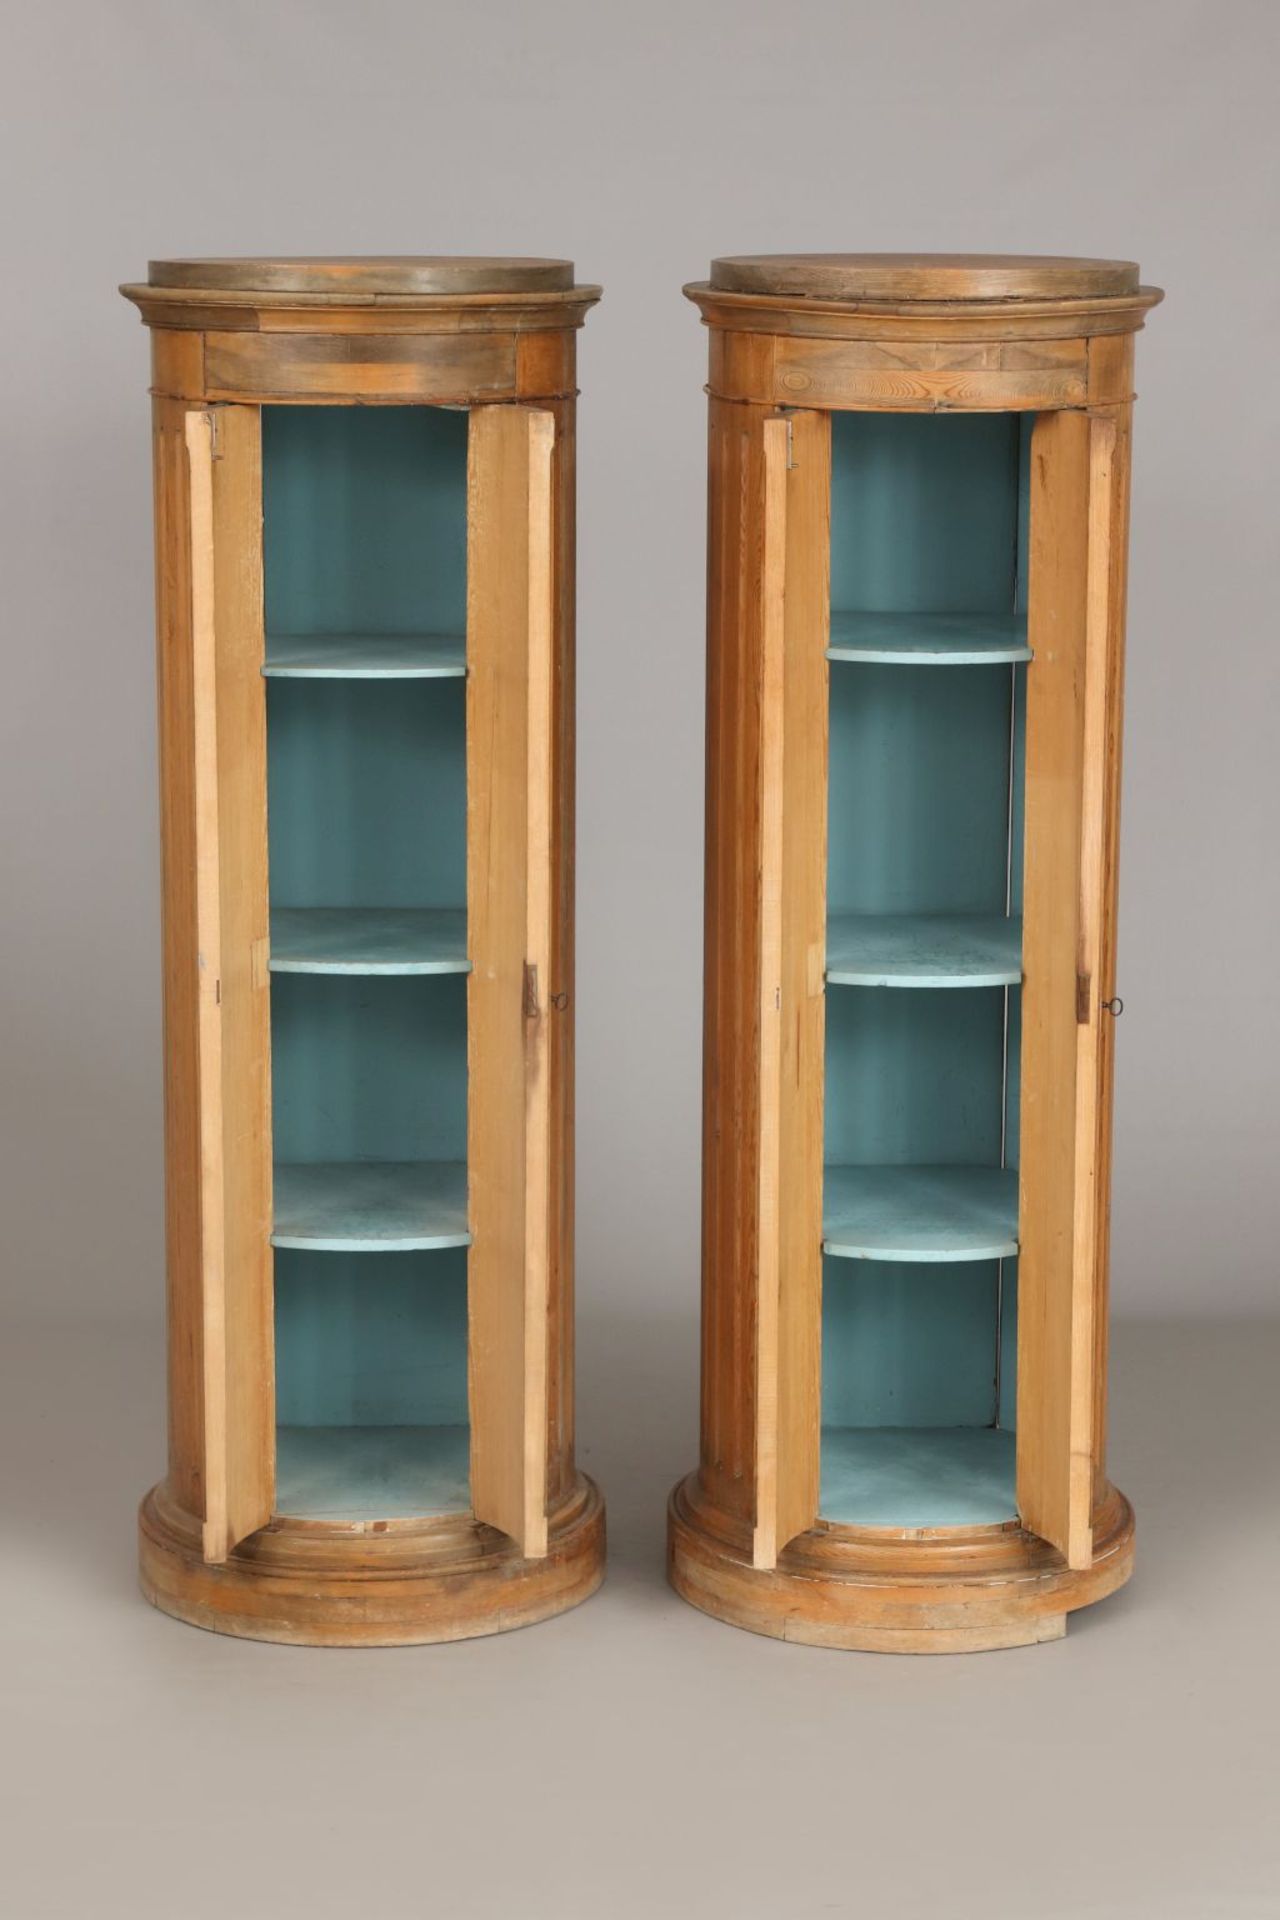 Paar Biedermeier Säulenschränkenorddeutsch, um 1820, hoher 7/8 runder Korpus mit 2 kanneliert - Image 2 of 5